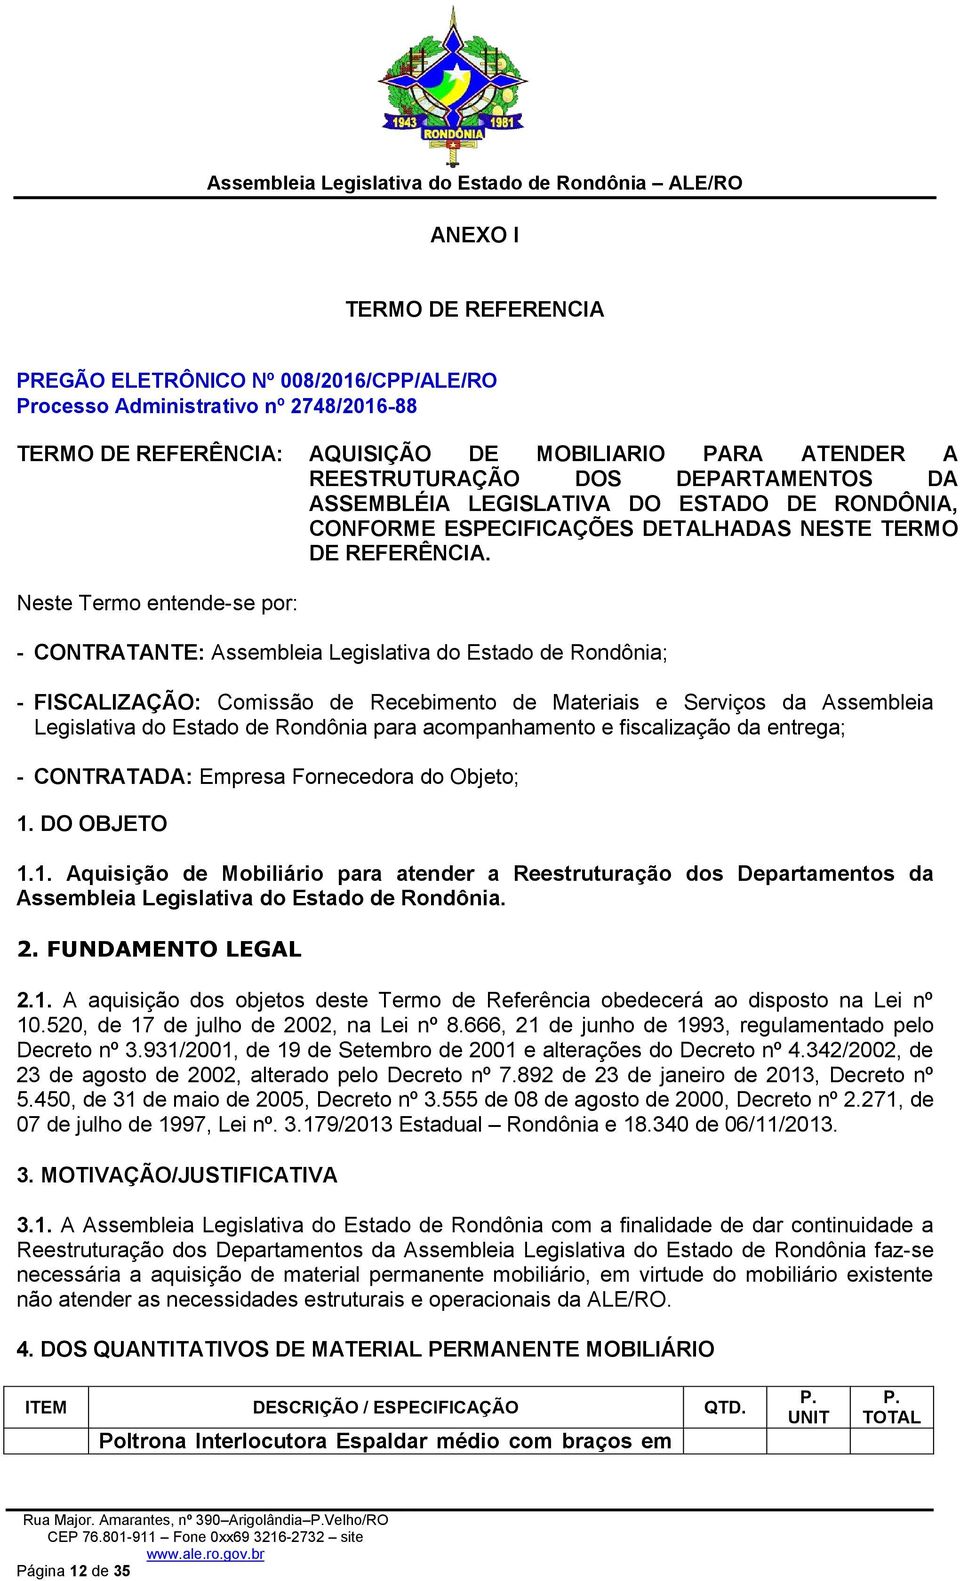 Neste Termo entende-se por: - CONTRATANTE: Assembleia Legislativa do Estado de Rondônia; - FISCALIZAÇÃO: Comissão de Recebimento de Materiais e Serviços da Assembleia Legislativa do Estado de